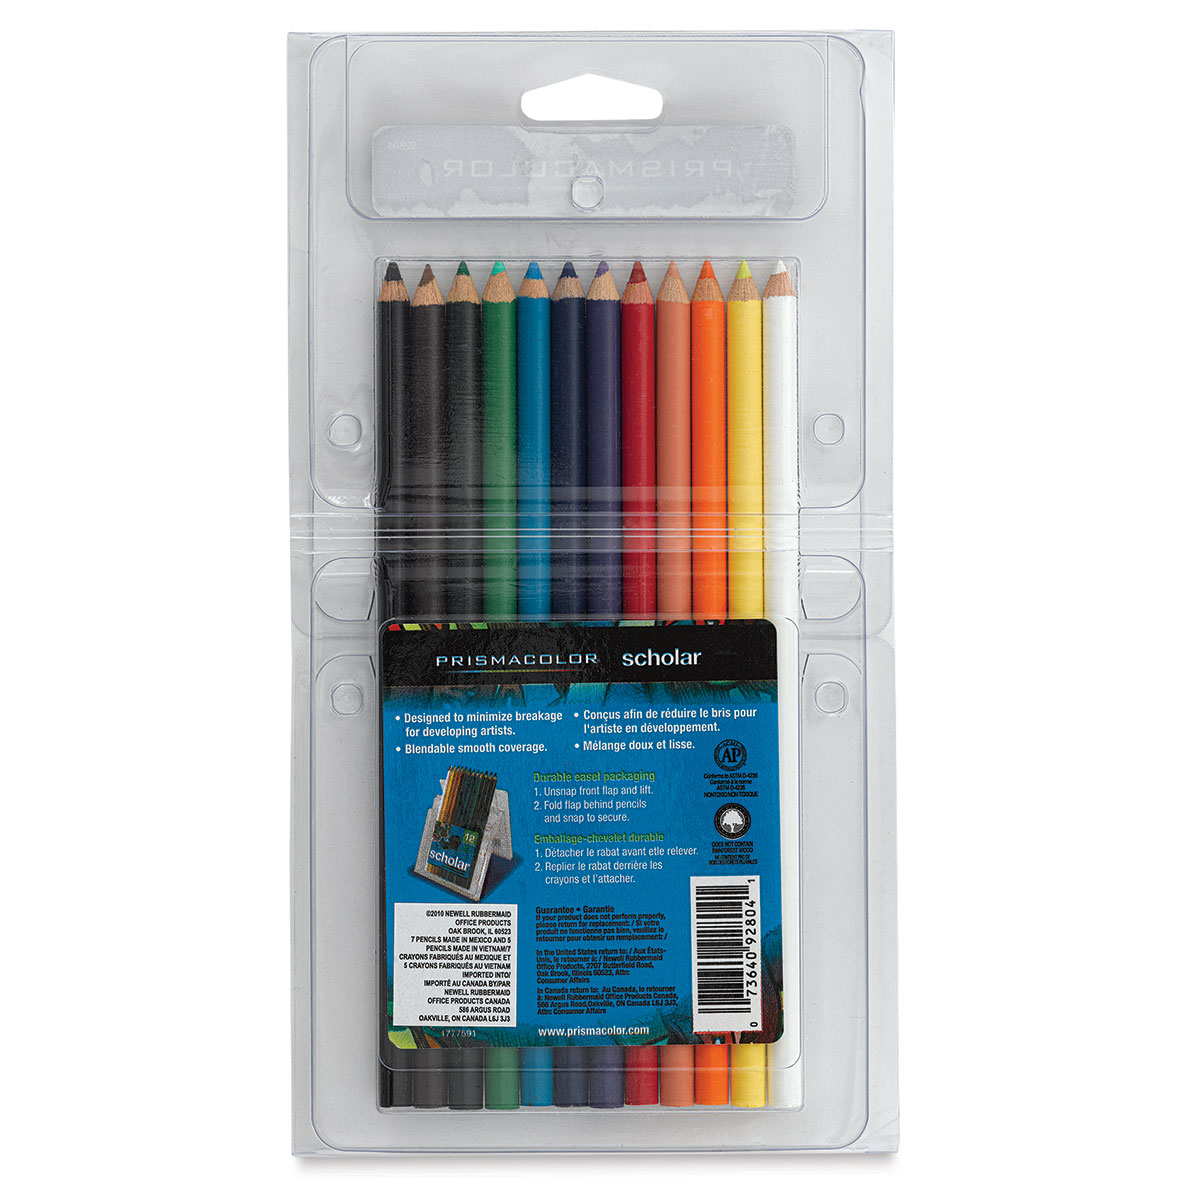 Prismacolor Scholar Art Pencil Set - Assorted Colors, Set of 24